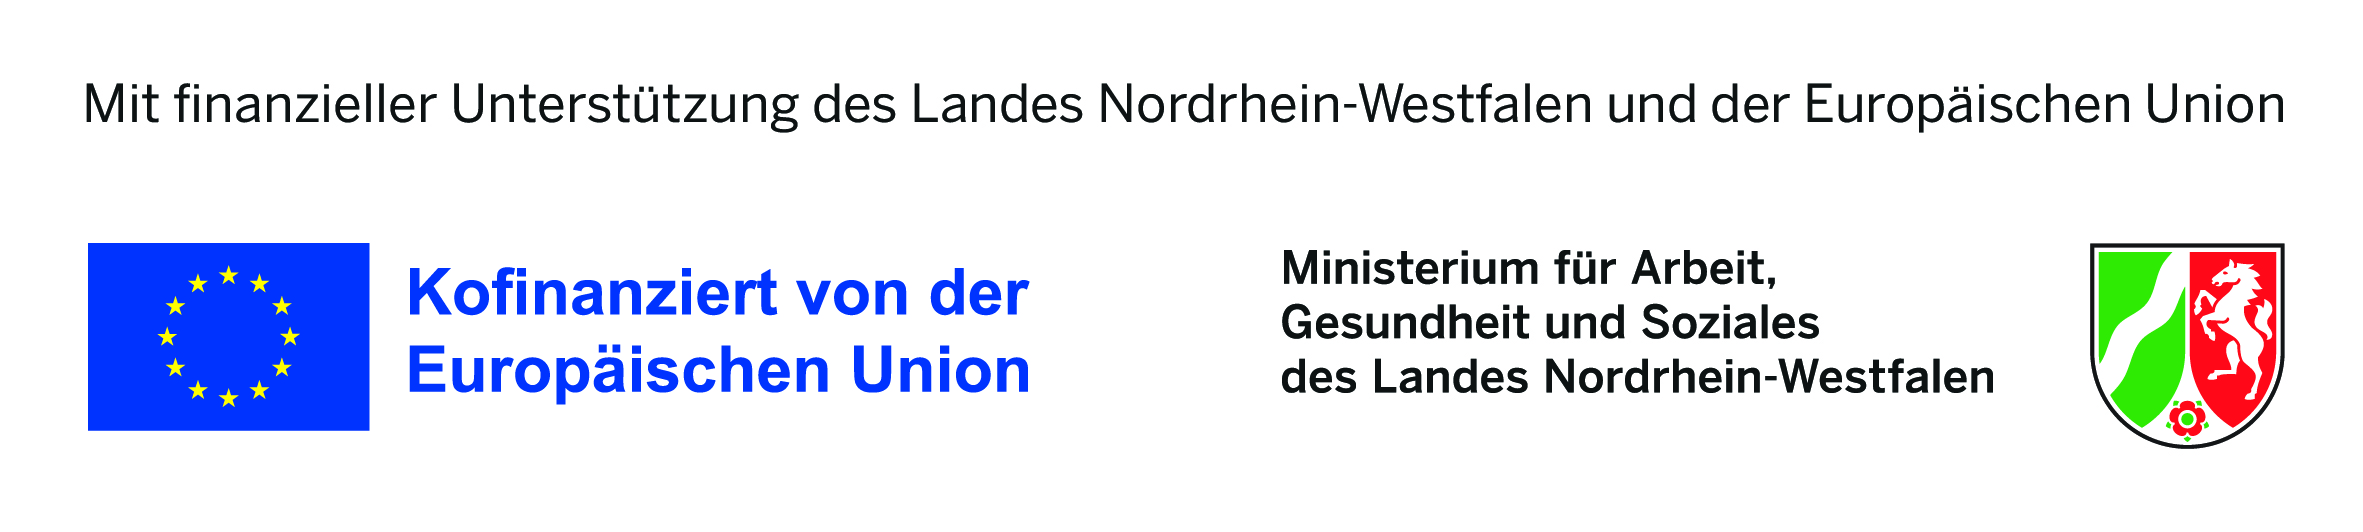 Mit finanzieller Untersttzung des Landes Nordrhein-Westfalen und der Europischen Union